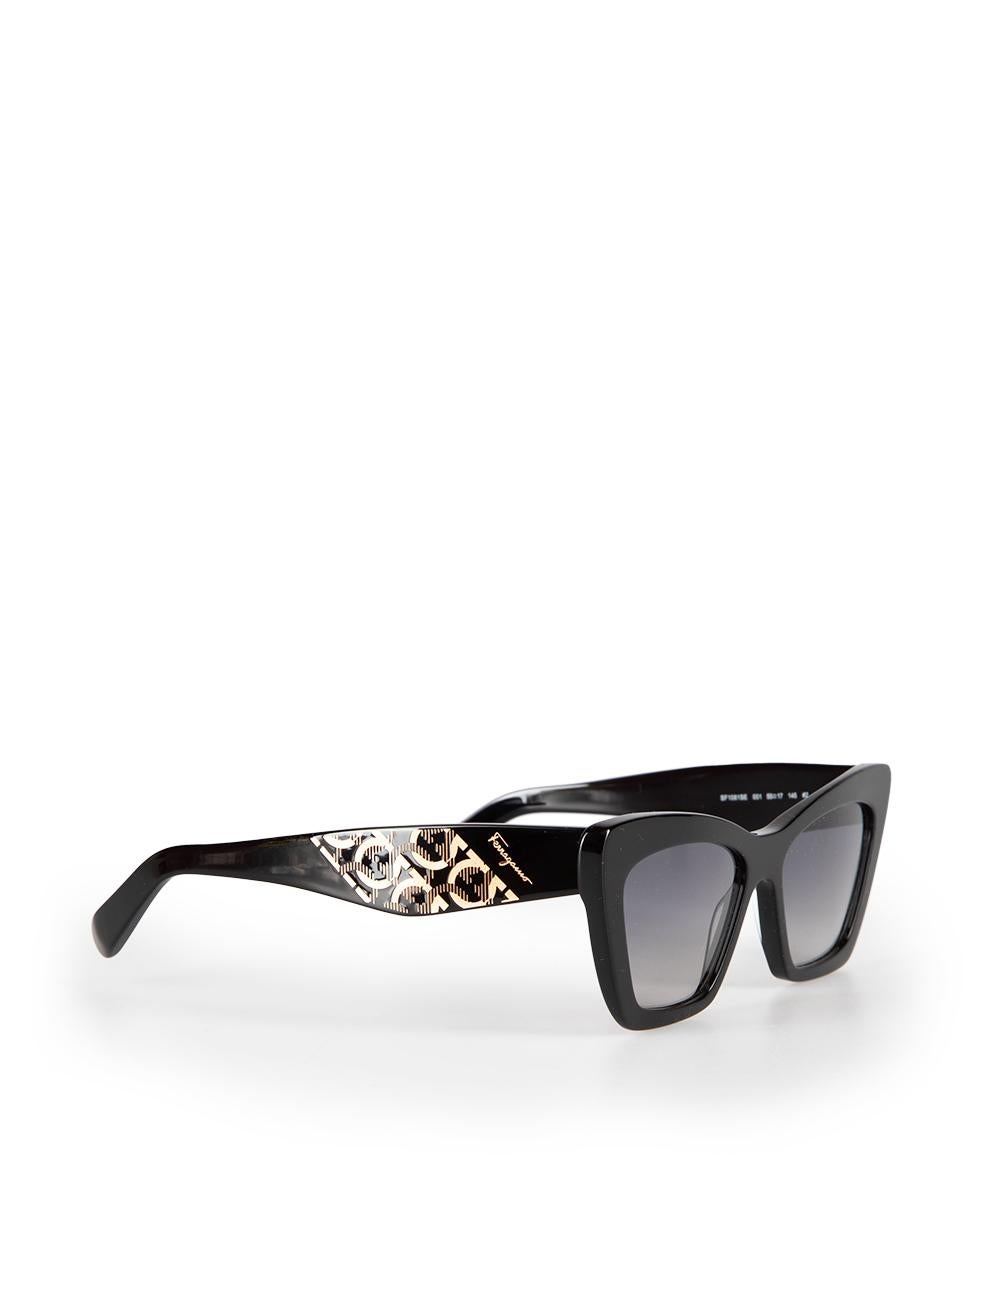 Salvatore Ferragamo Black Cat Eye Gradient Sunglasses In New Condition For Sale In London, GB